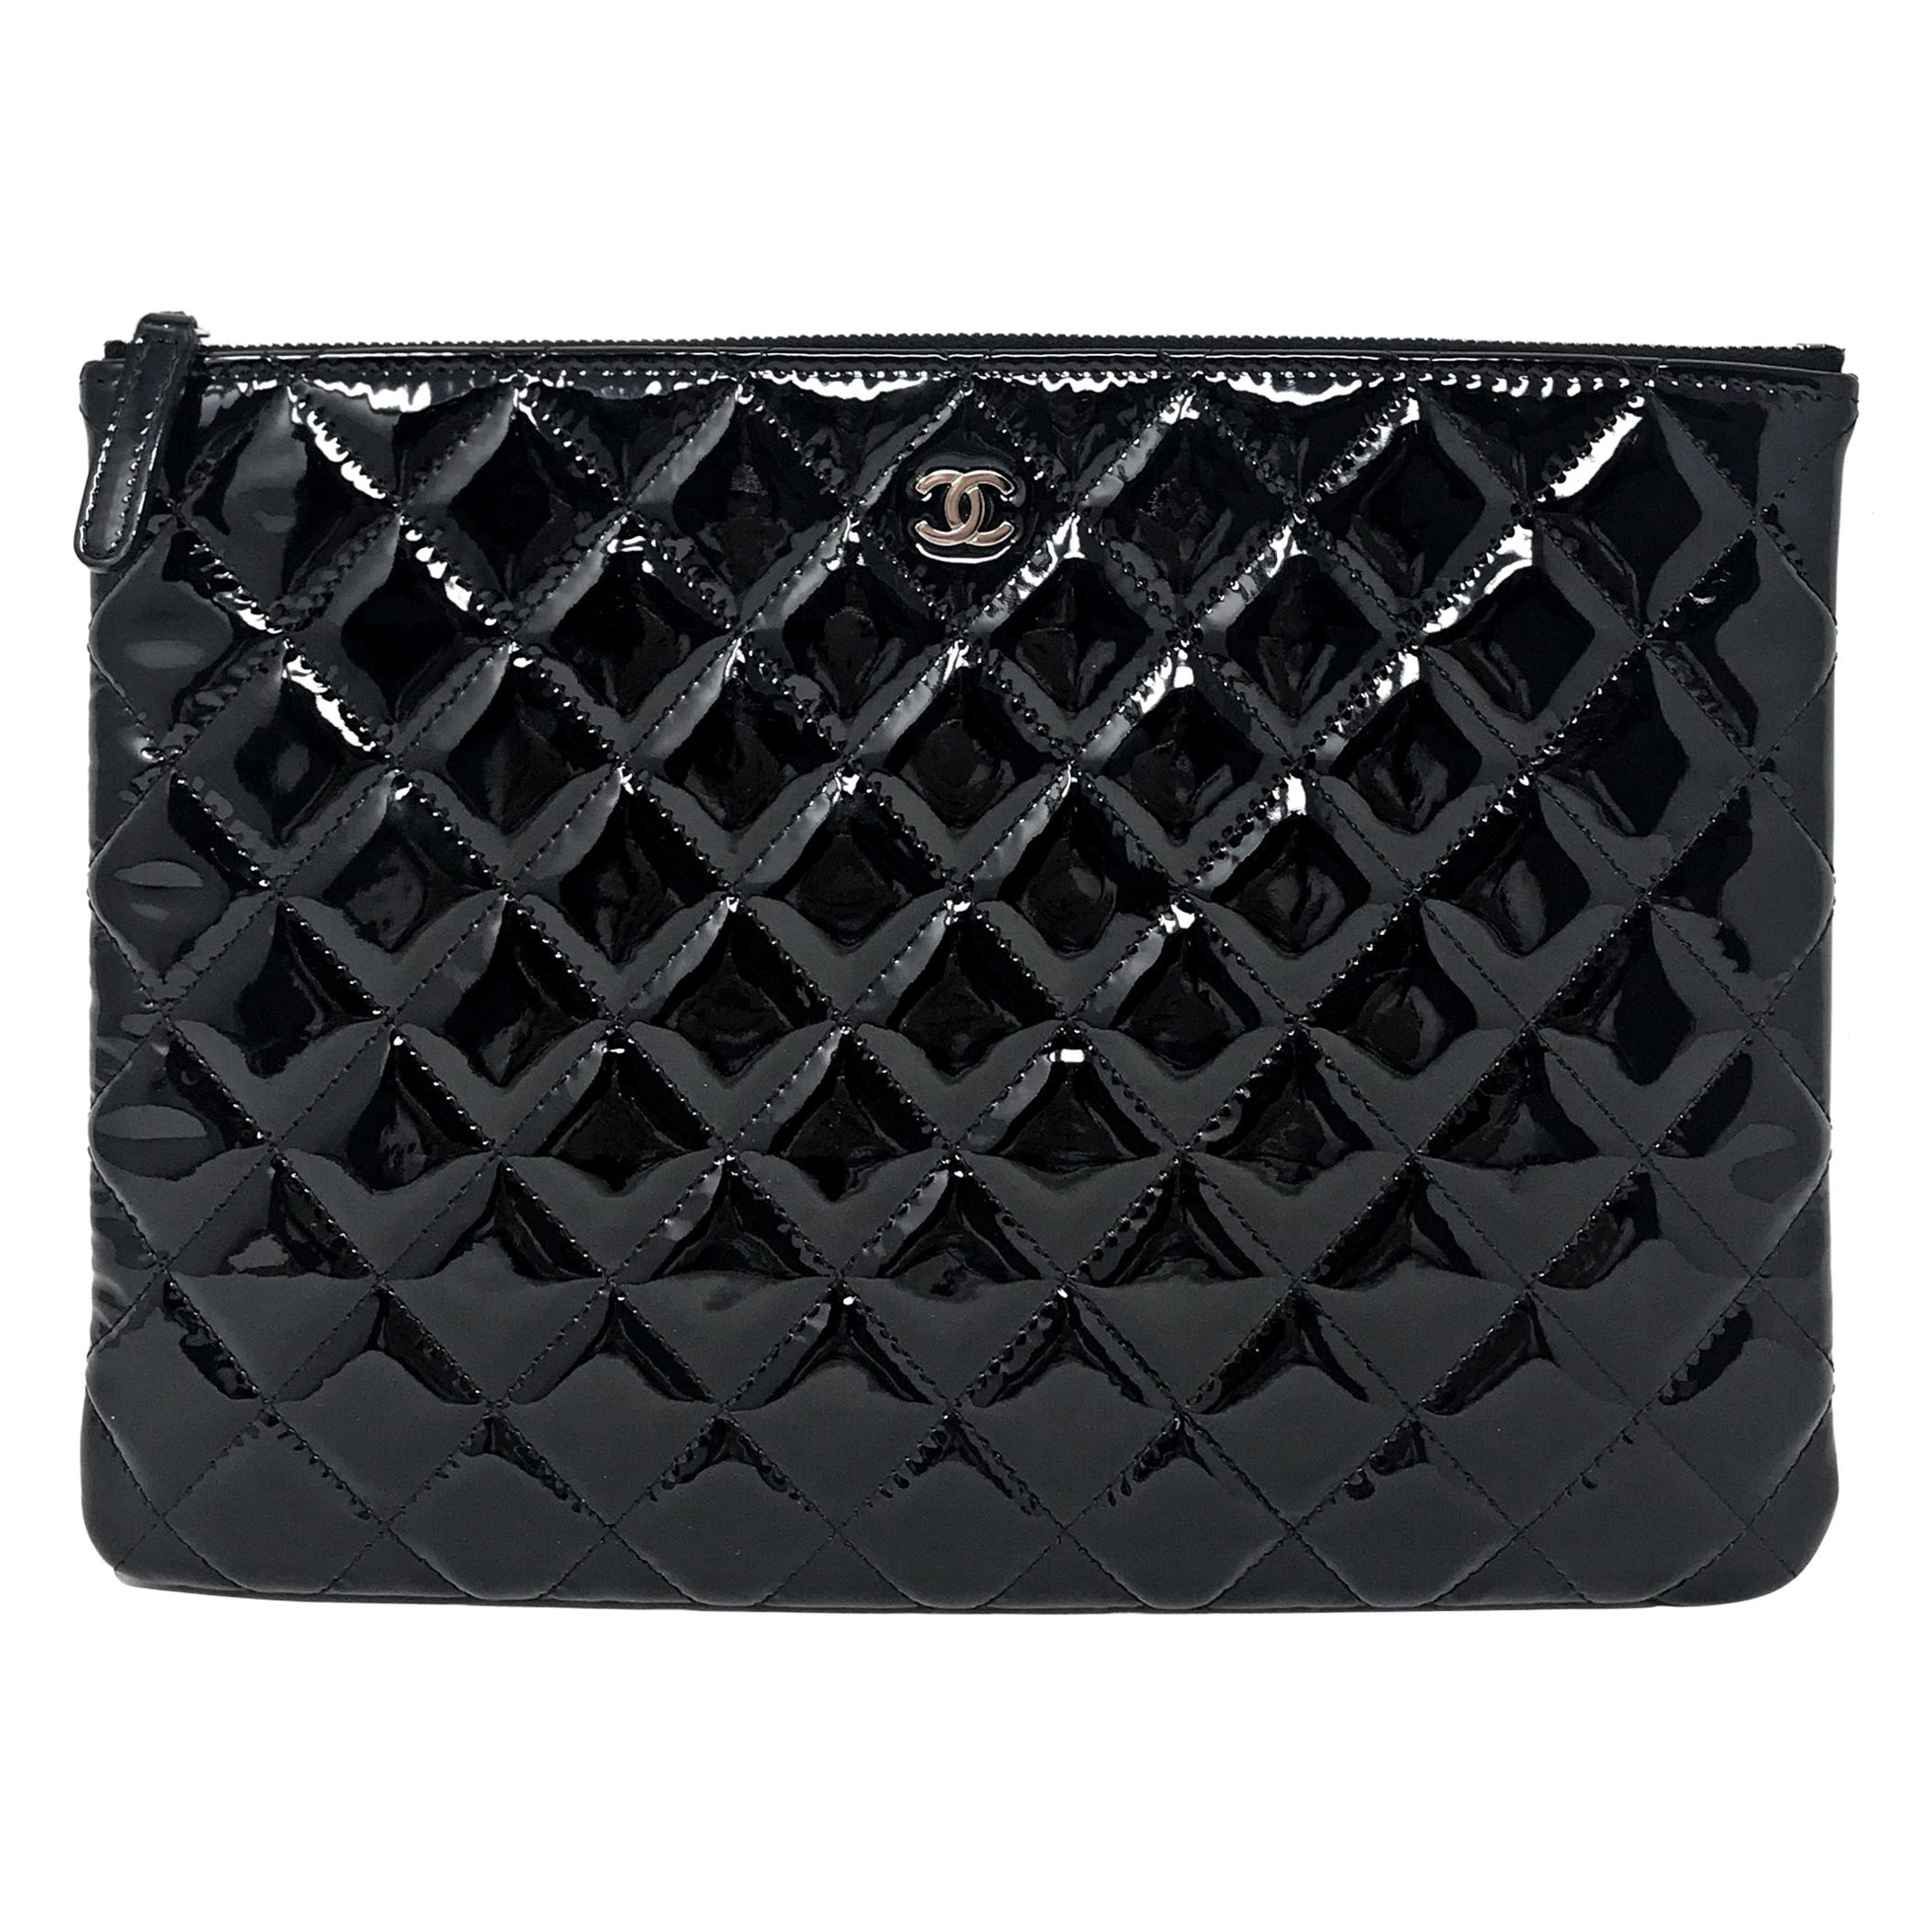 Clutch Chanel Paris matelassé patent leather, 2015 